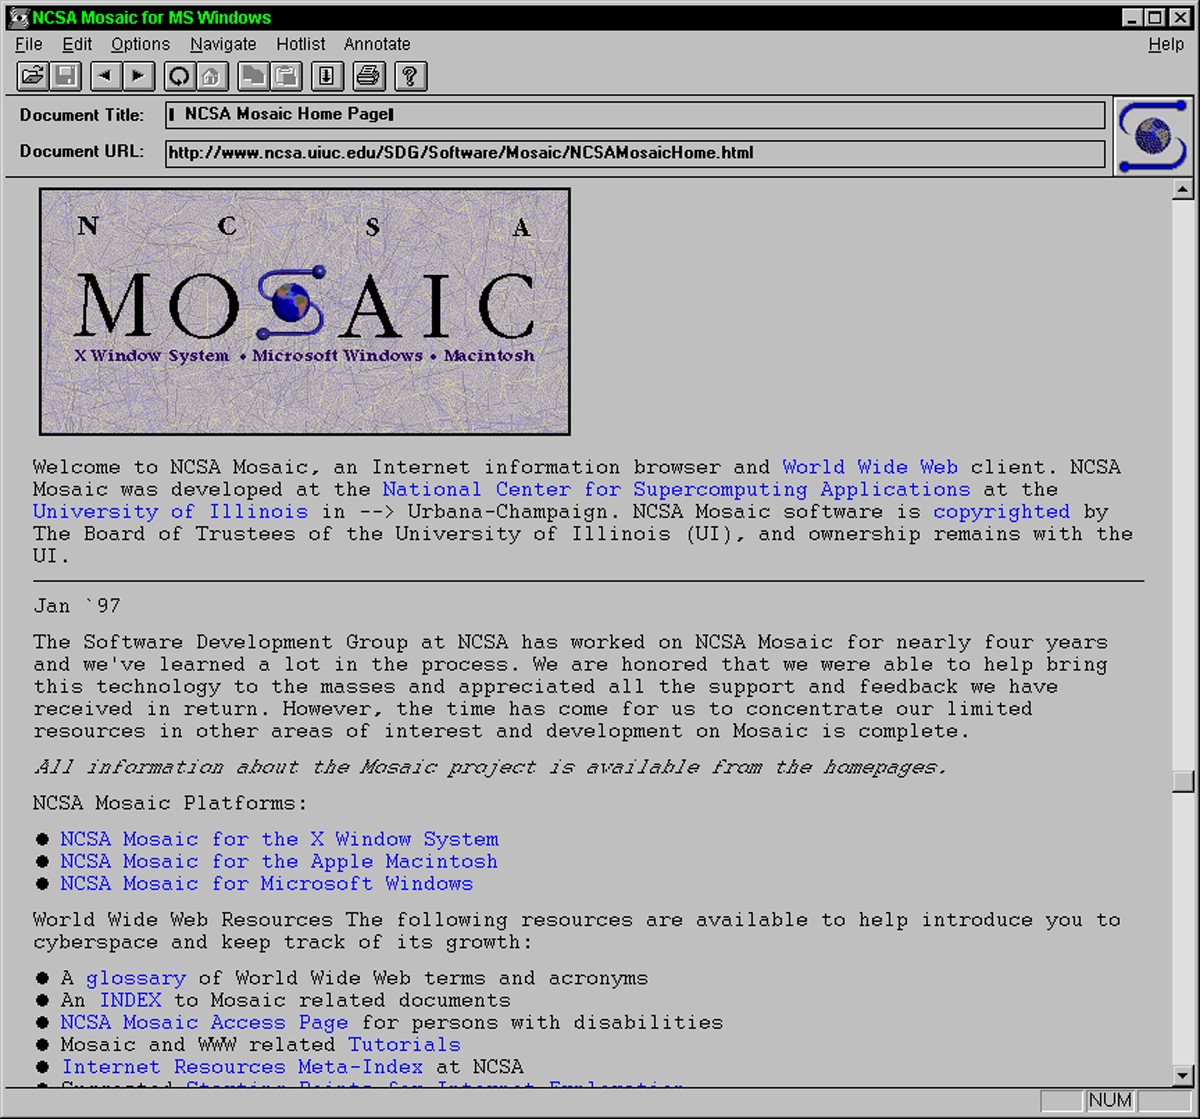 Mosaic Browser: Die Revolution des Internets begann vor 25 Jahren